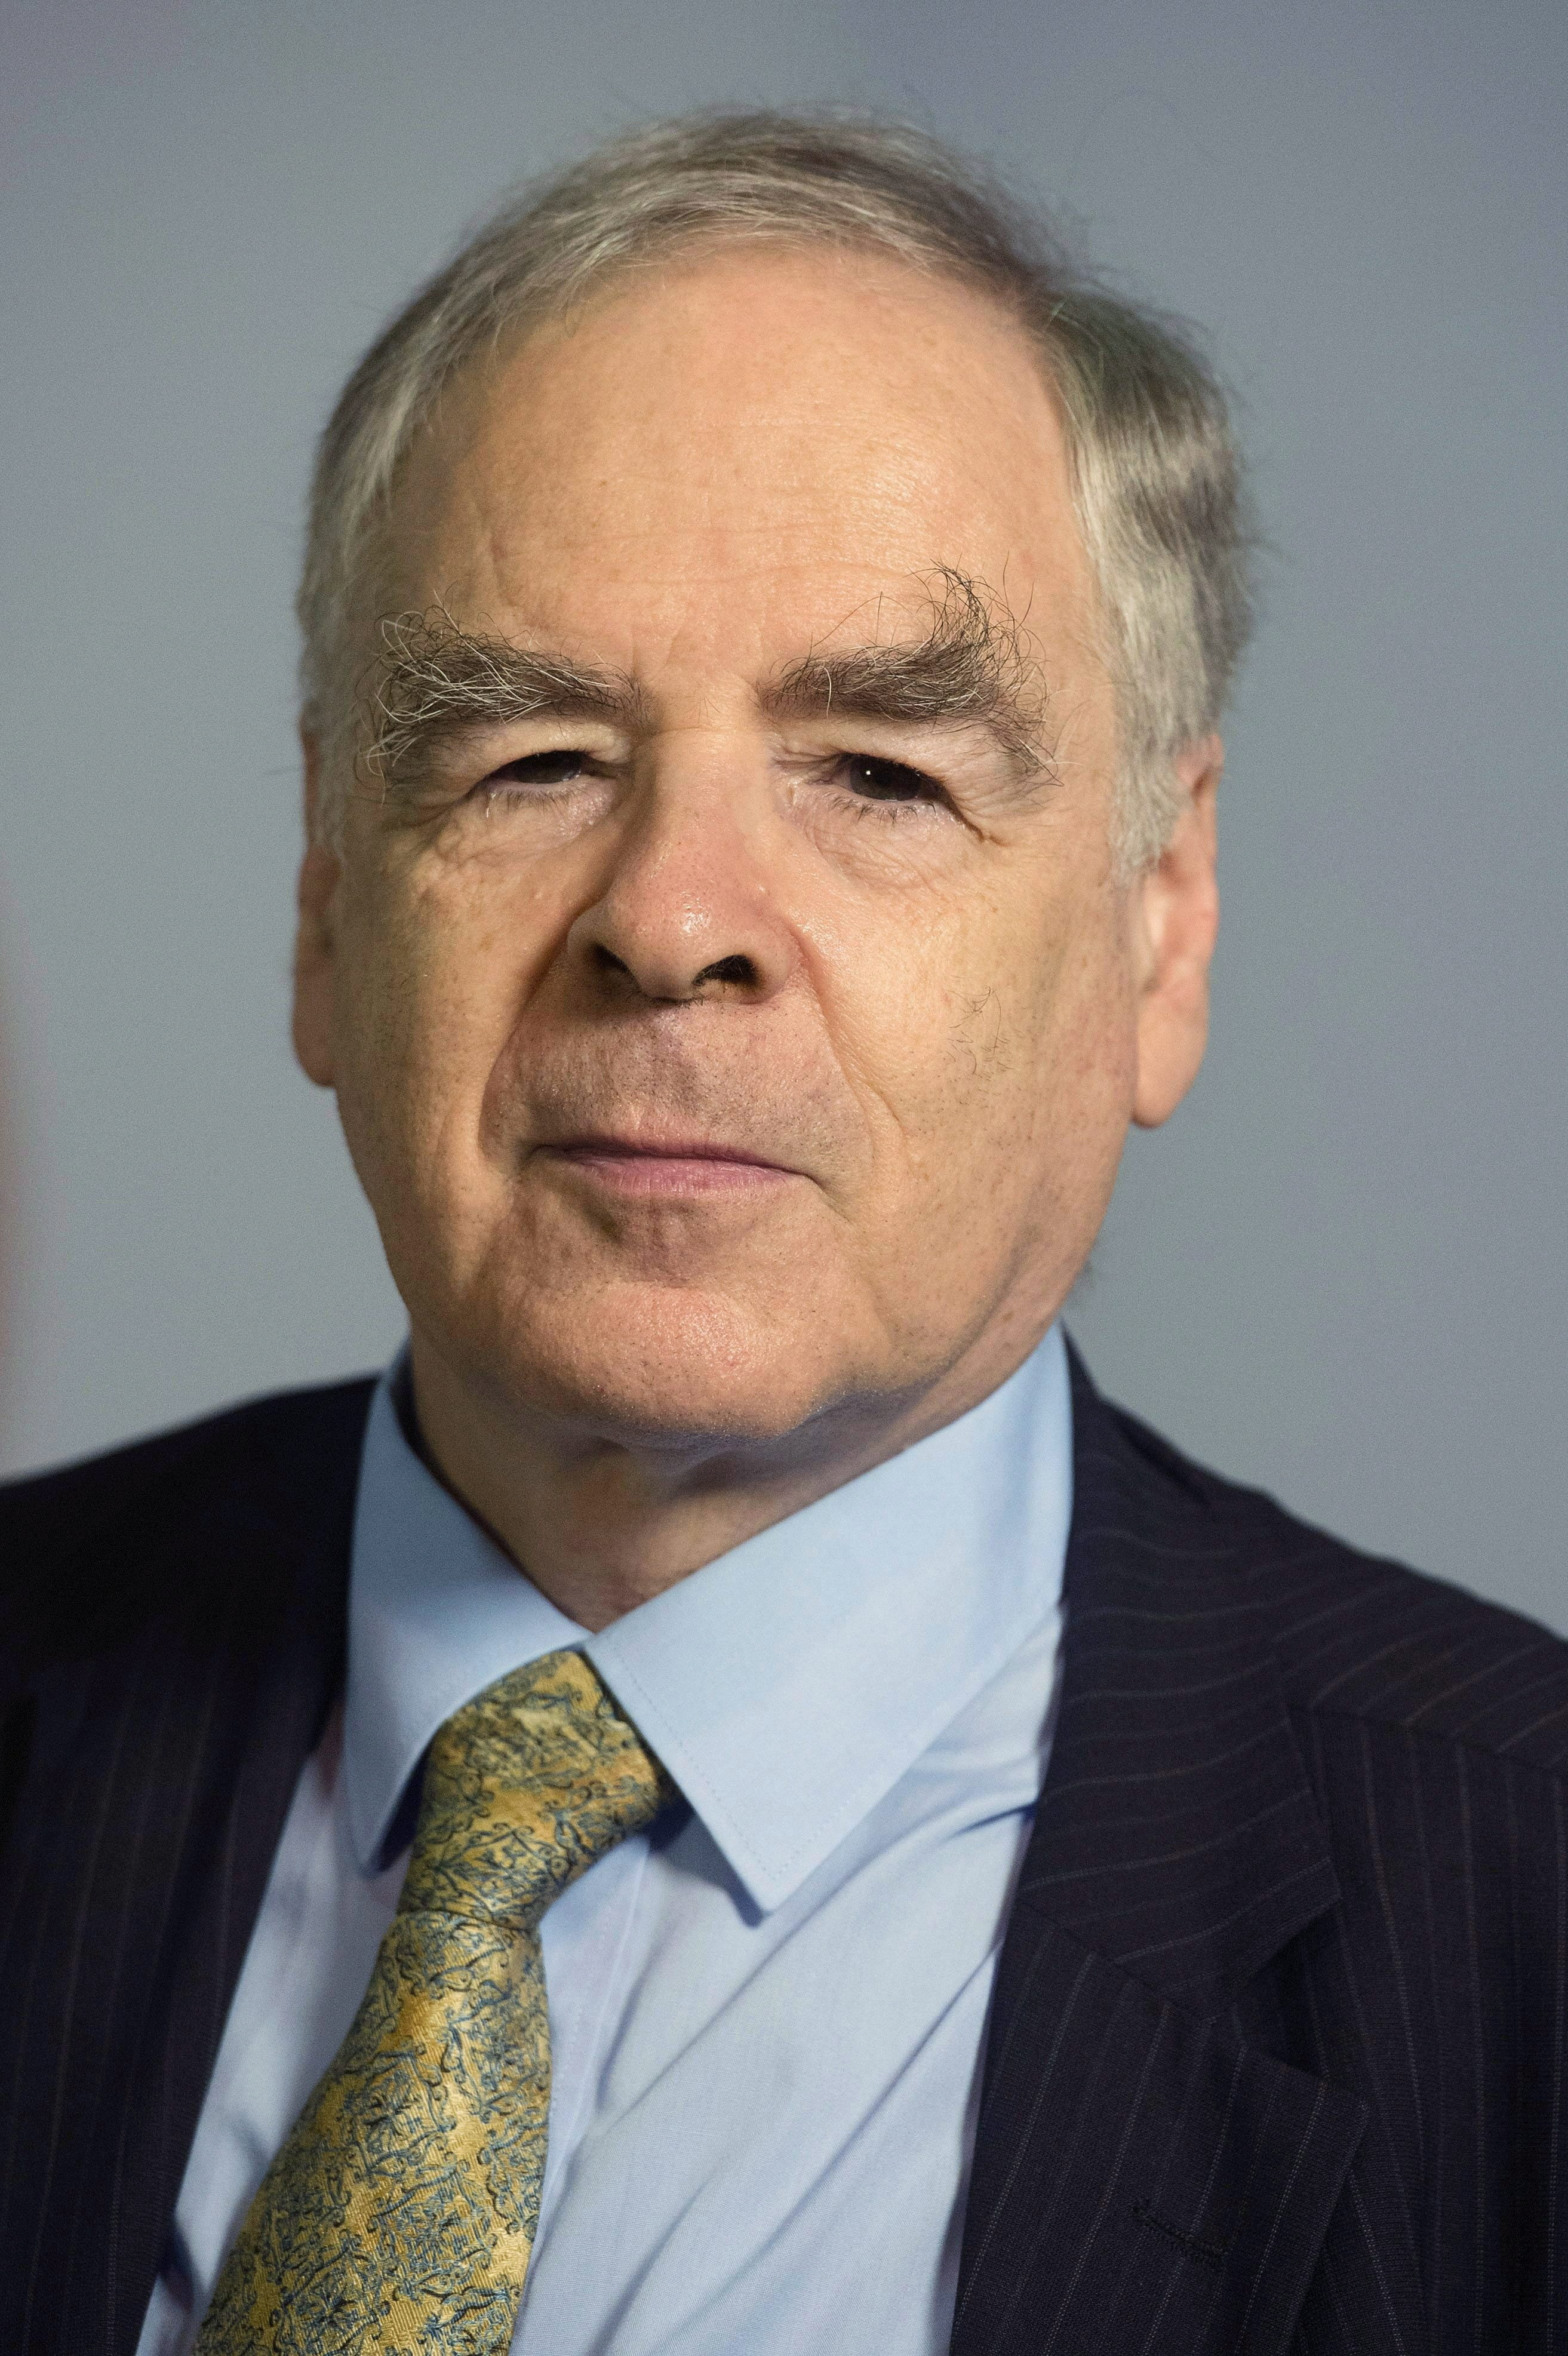 Elhunyt Schöpflin György korábbi fideszes EP-képviselő